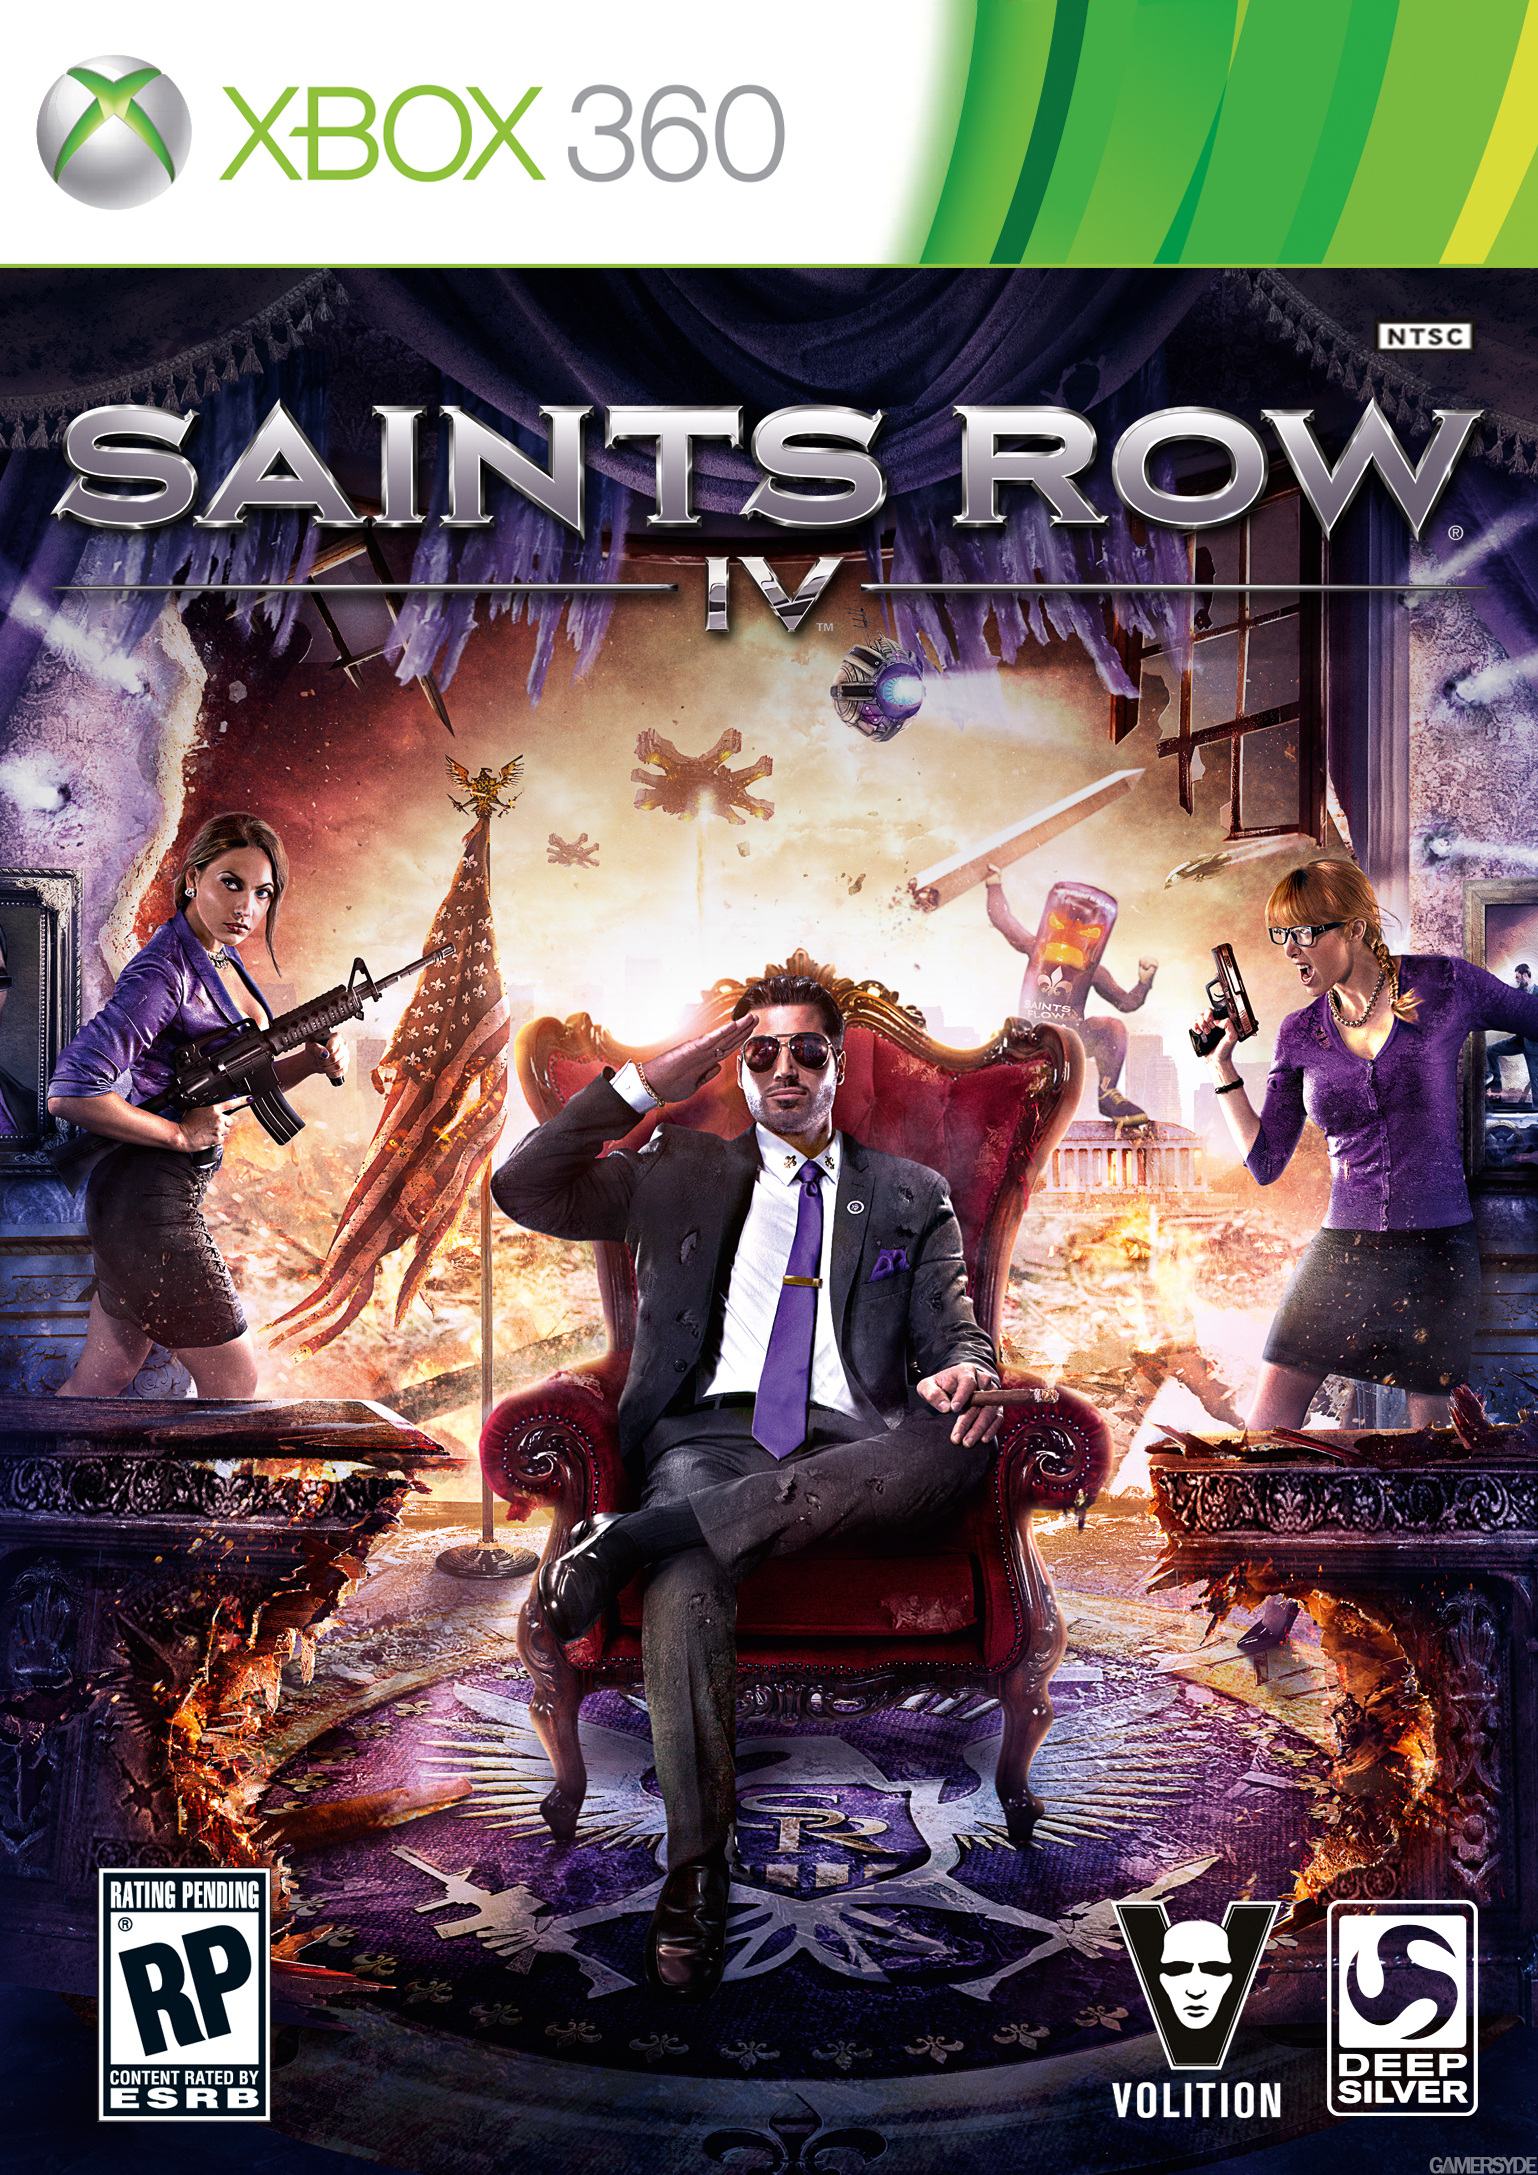 الغلاف الرسمي للعبة Saints Row IV ترو جيمنج